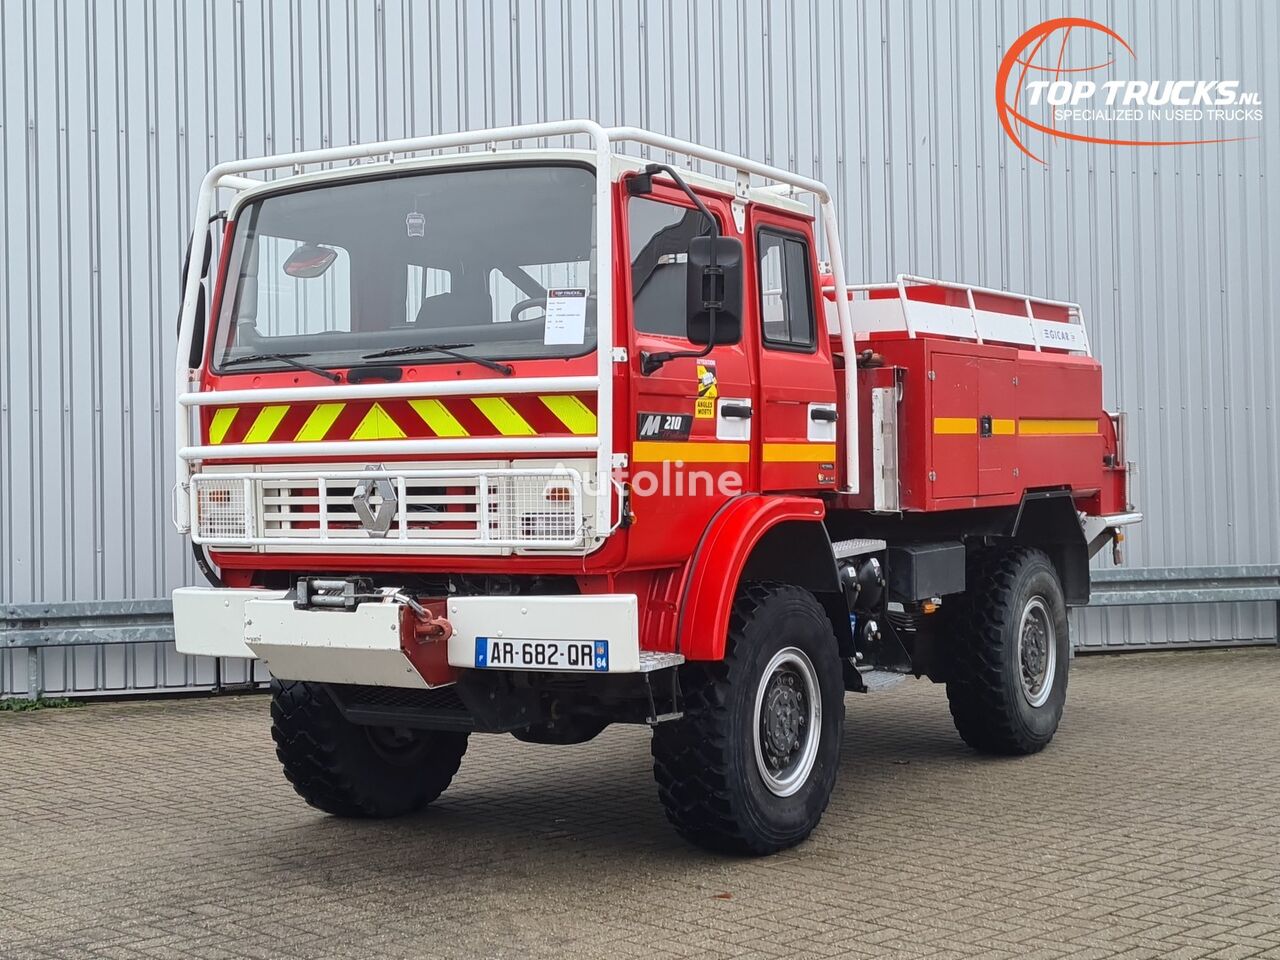 Renault Midliner M210 4x4 -Feuerwehr, Fire brigade - 3.600 ltr watertank fire truck